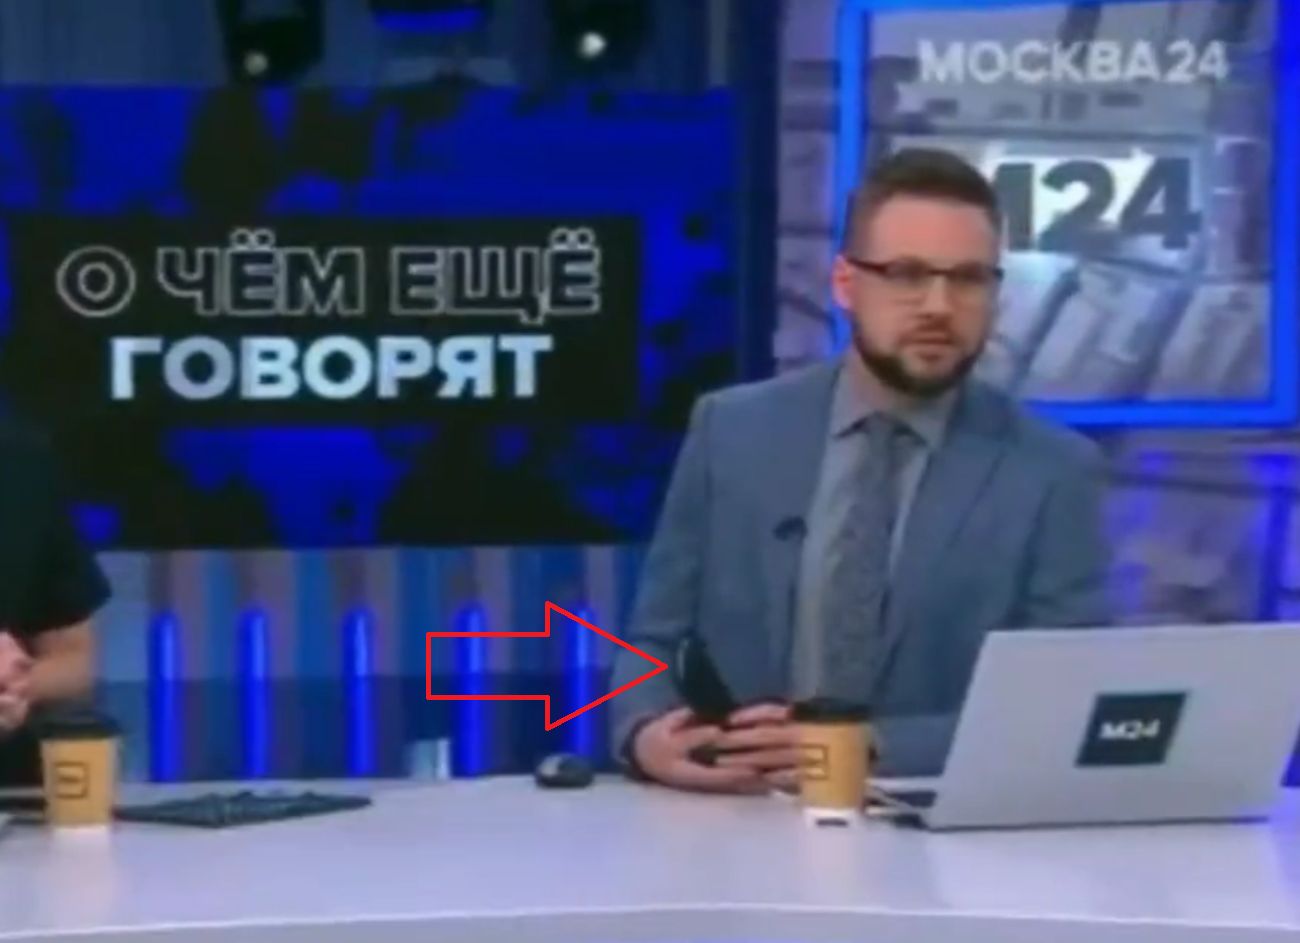 Rosyjski prezenter i chiński smartfon. Prawda wyszła na jaw